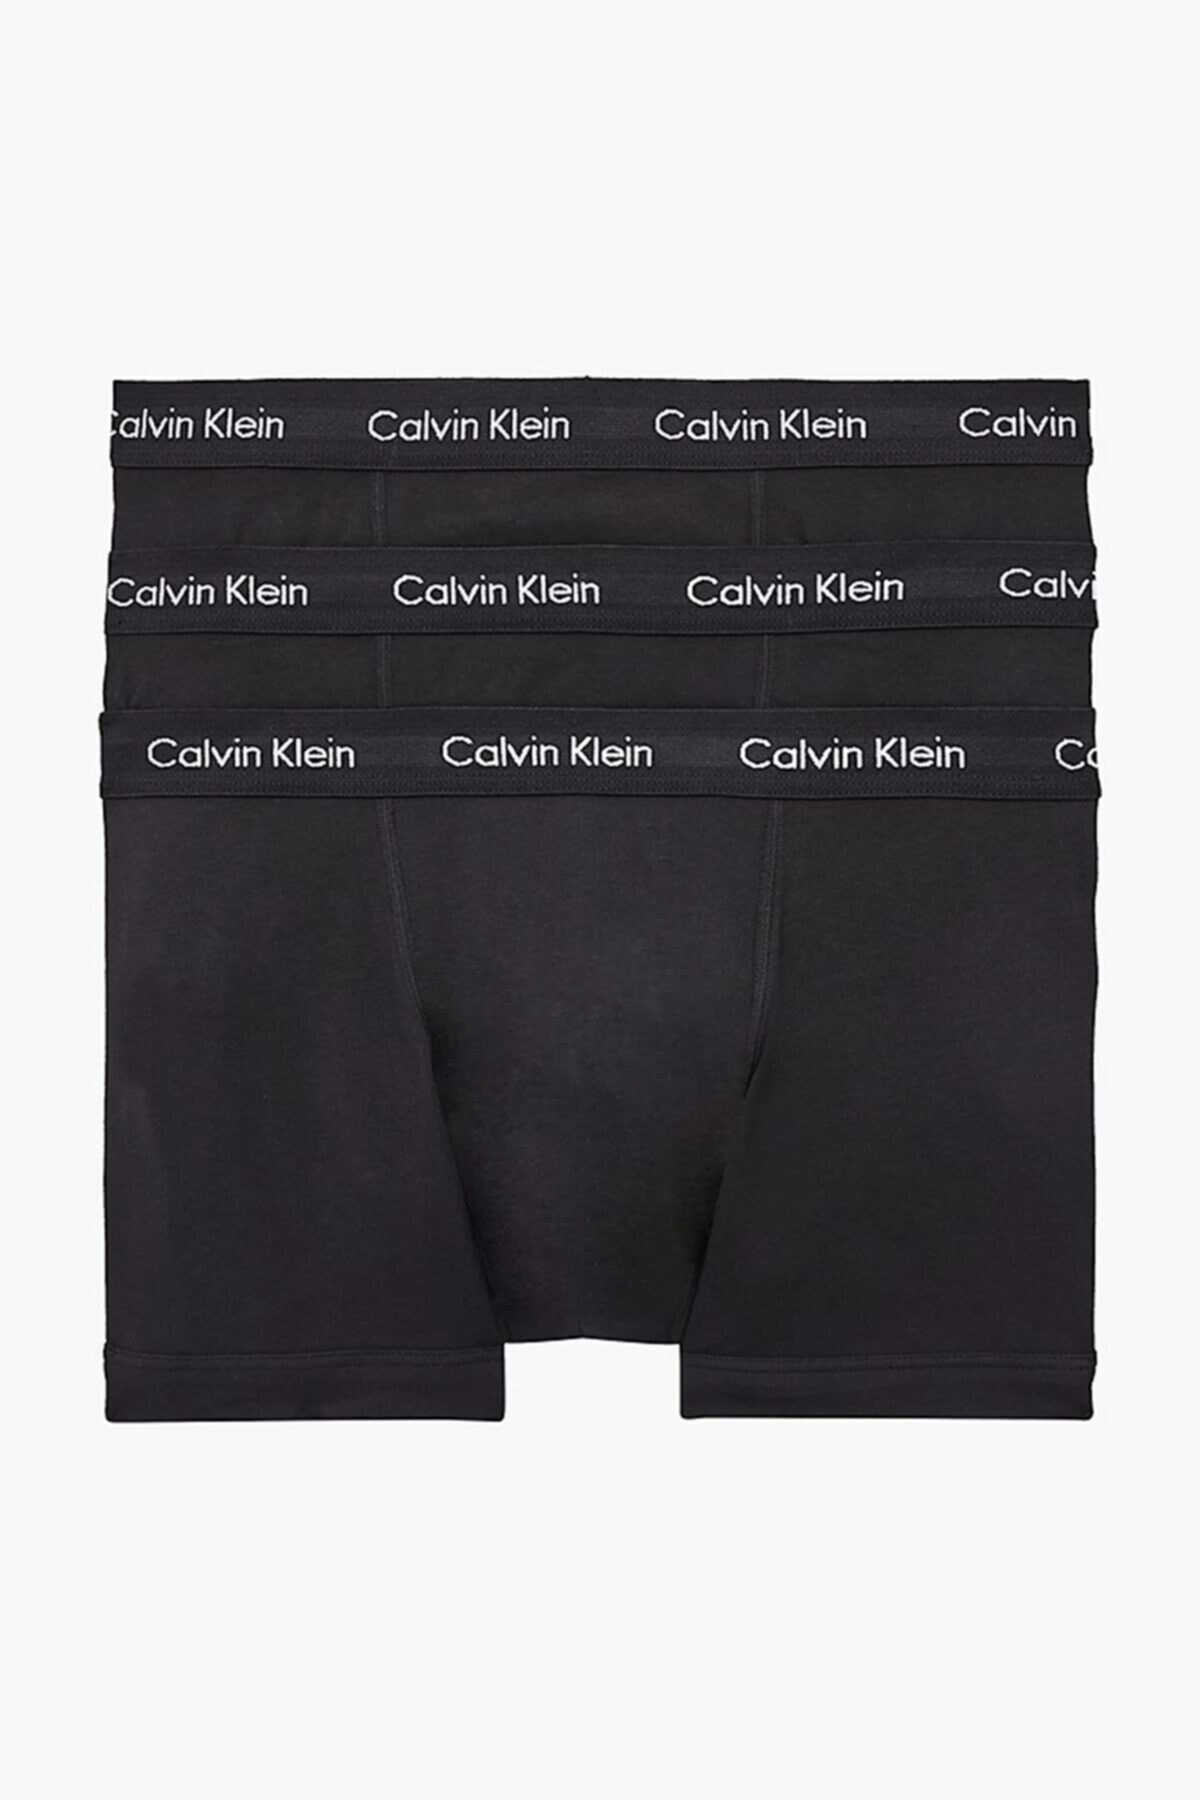 شورت اسلیپ پادار مردانه ست 3 عددی مشکی مدل 0000u2662g برند Calvin Klein